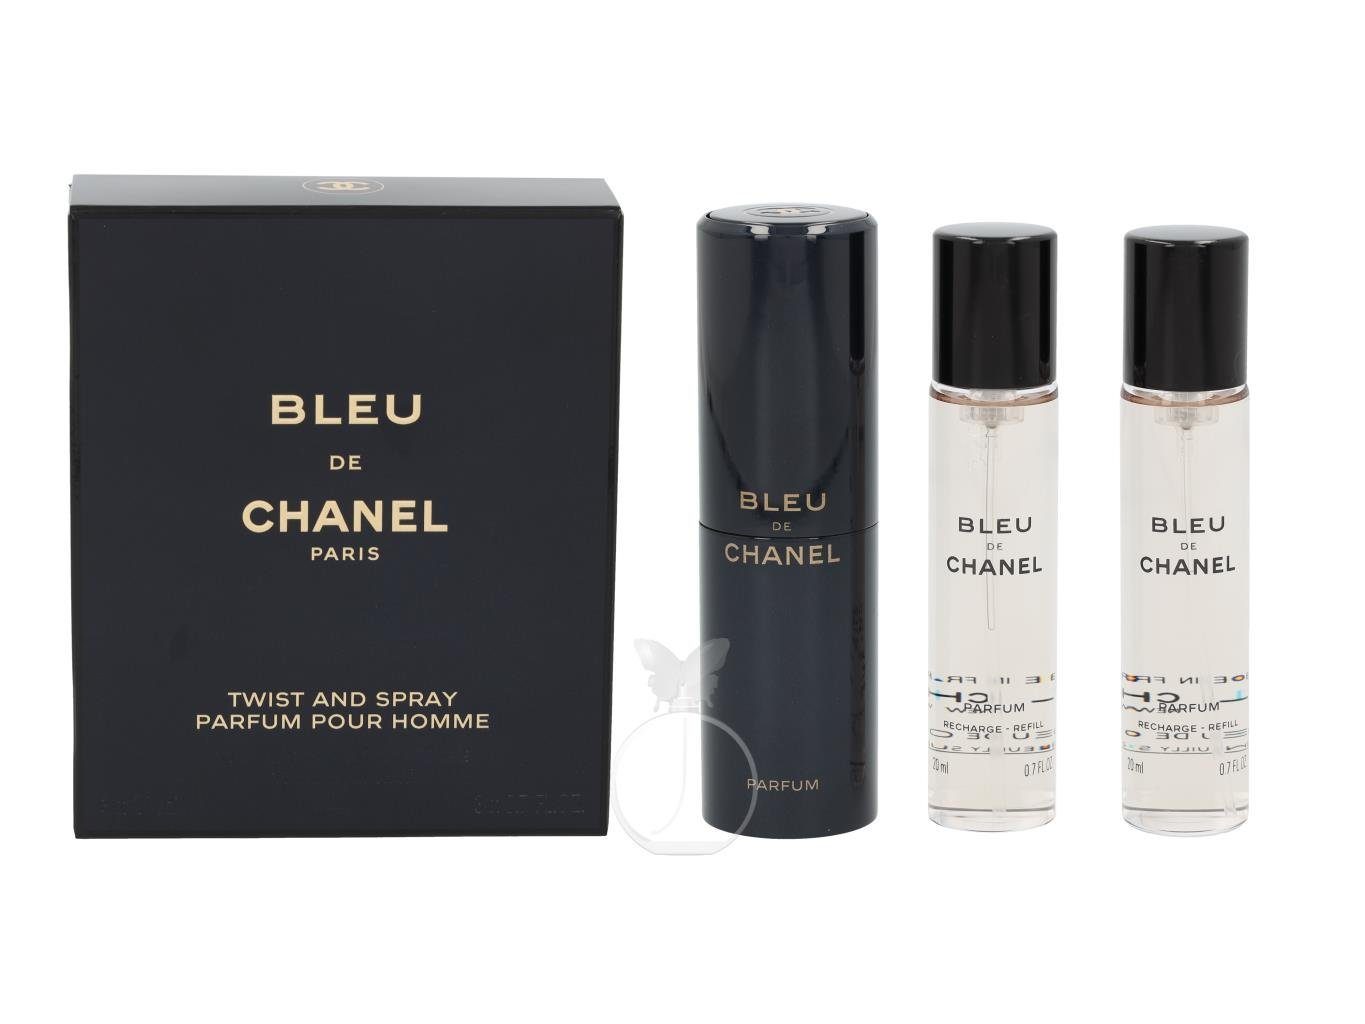 3 Bleu CHANEL de Twist mit Chanel and 20 Parfum Extrait Parfum Zerstäuber x Chanel ml Spray